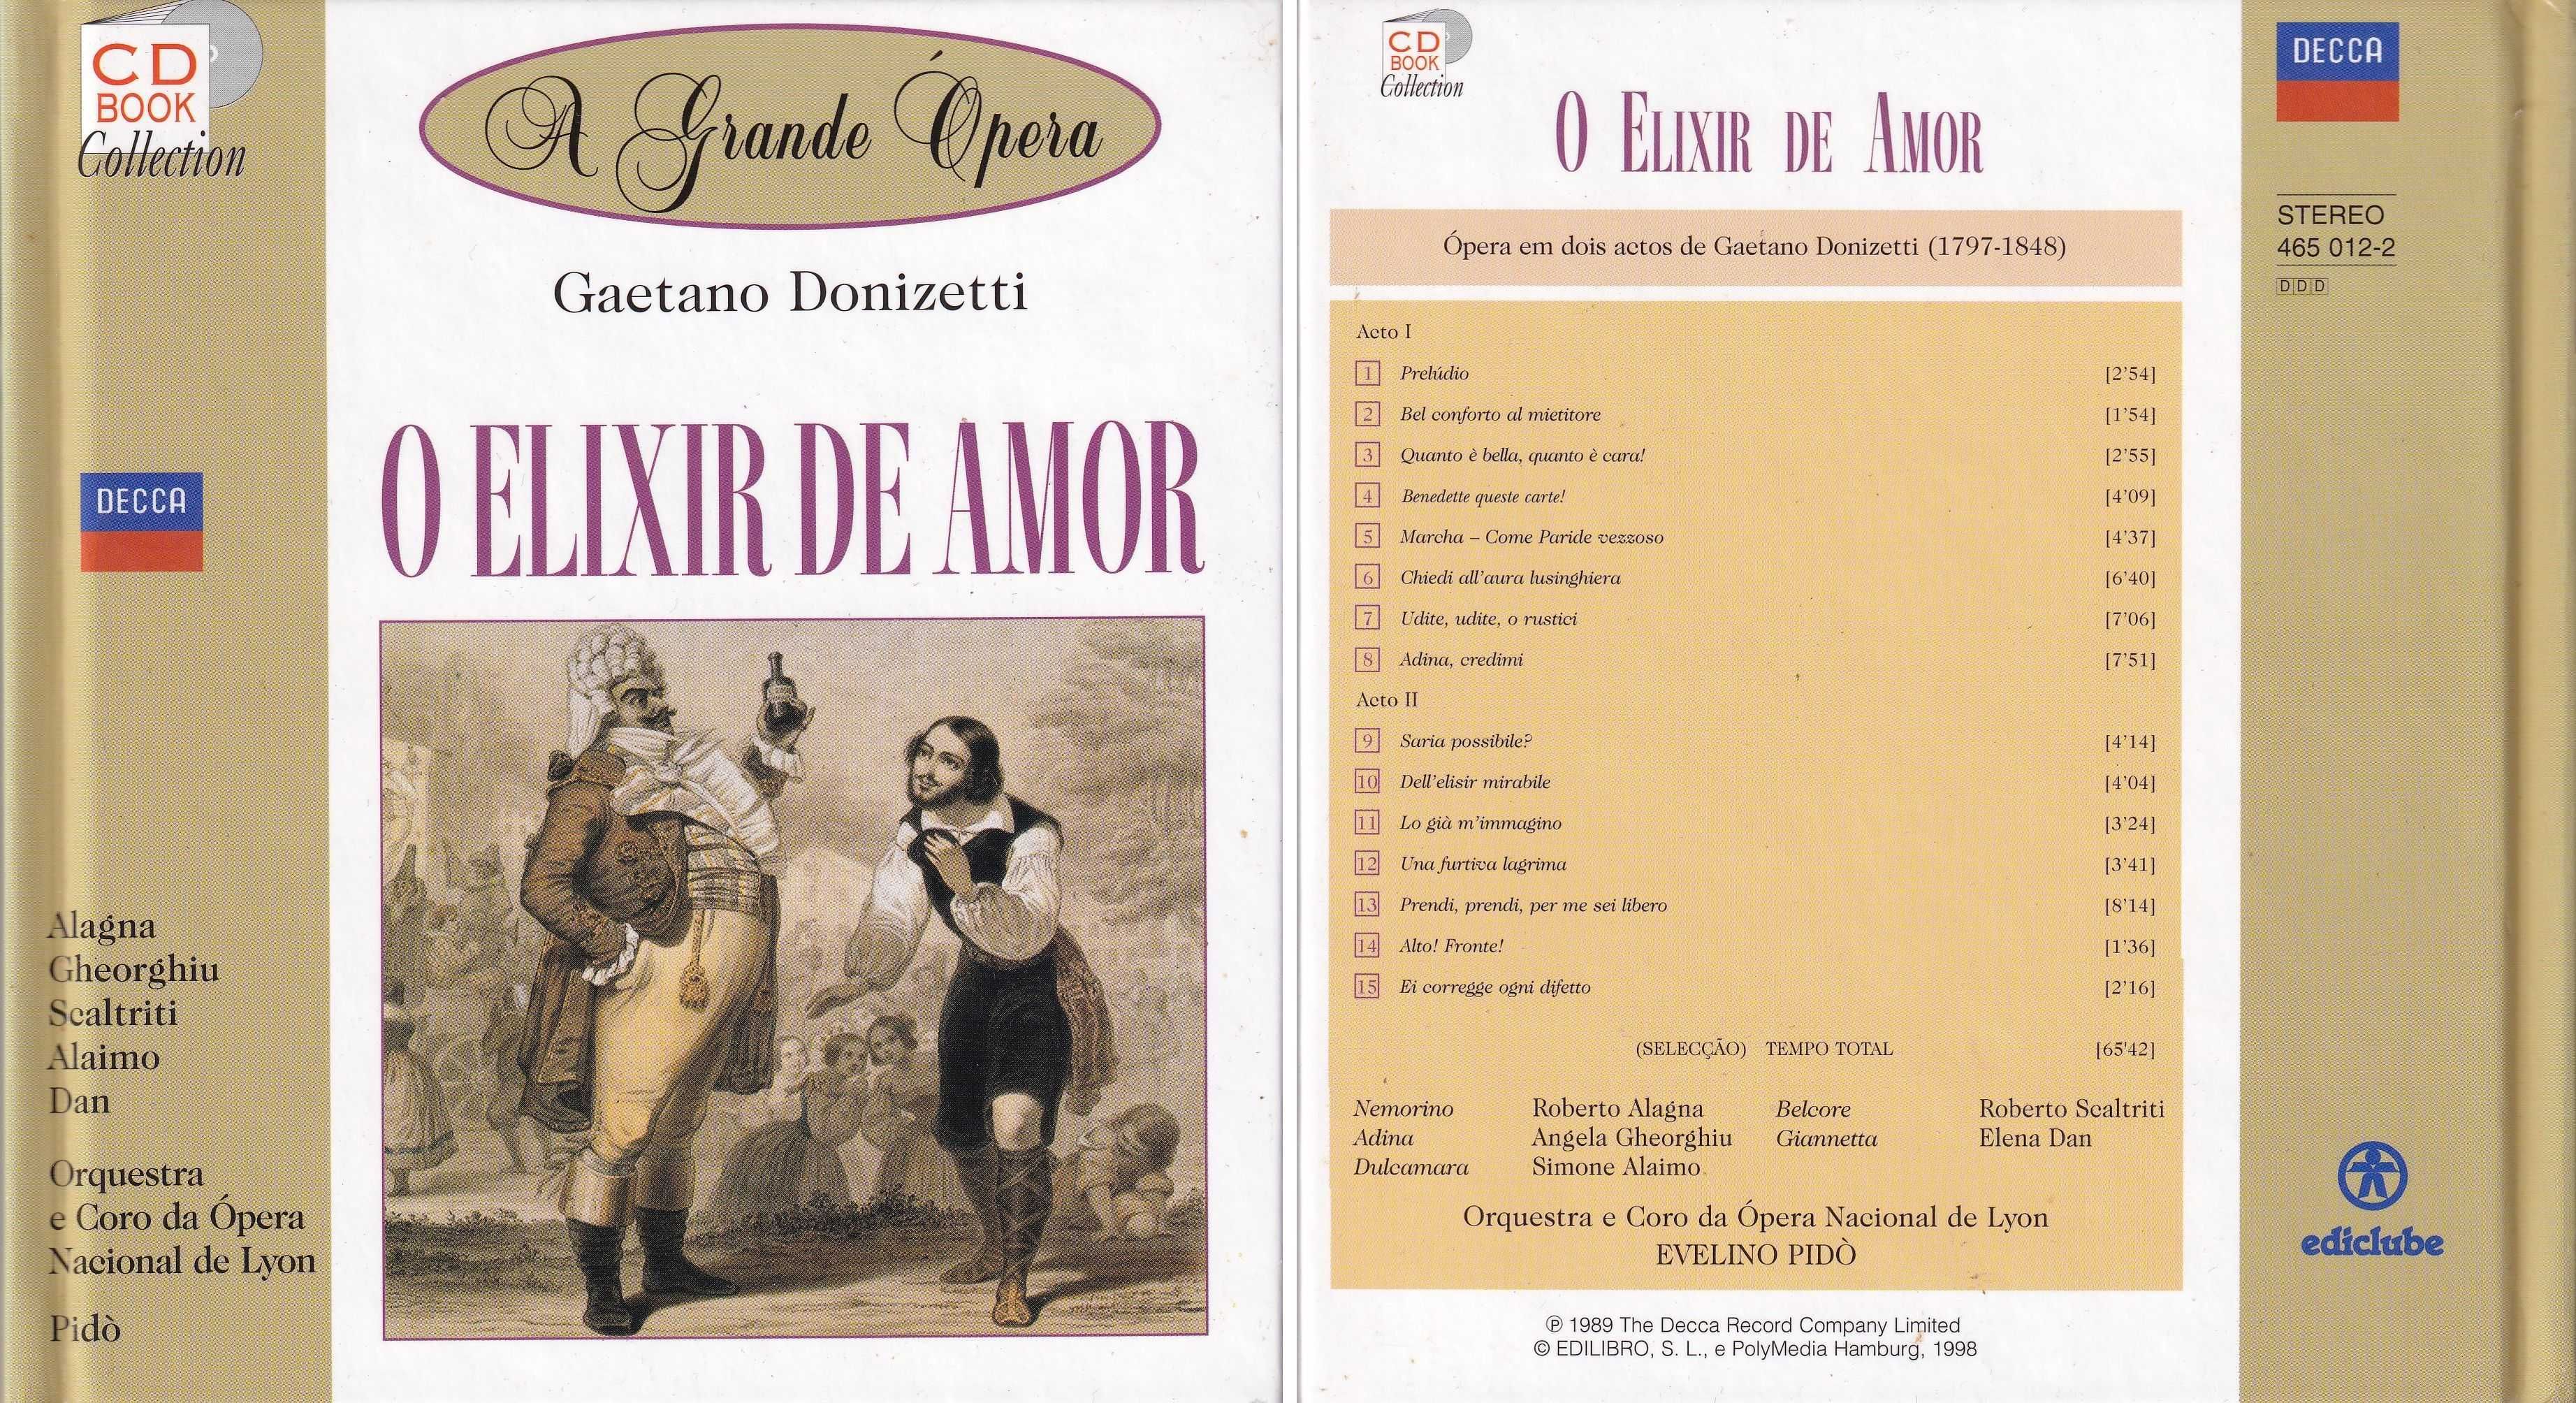 CD Book - (A Grande Opera) - O Elixir de amor